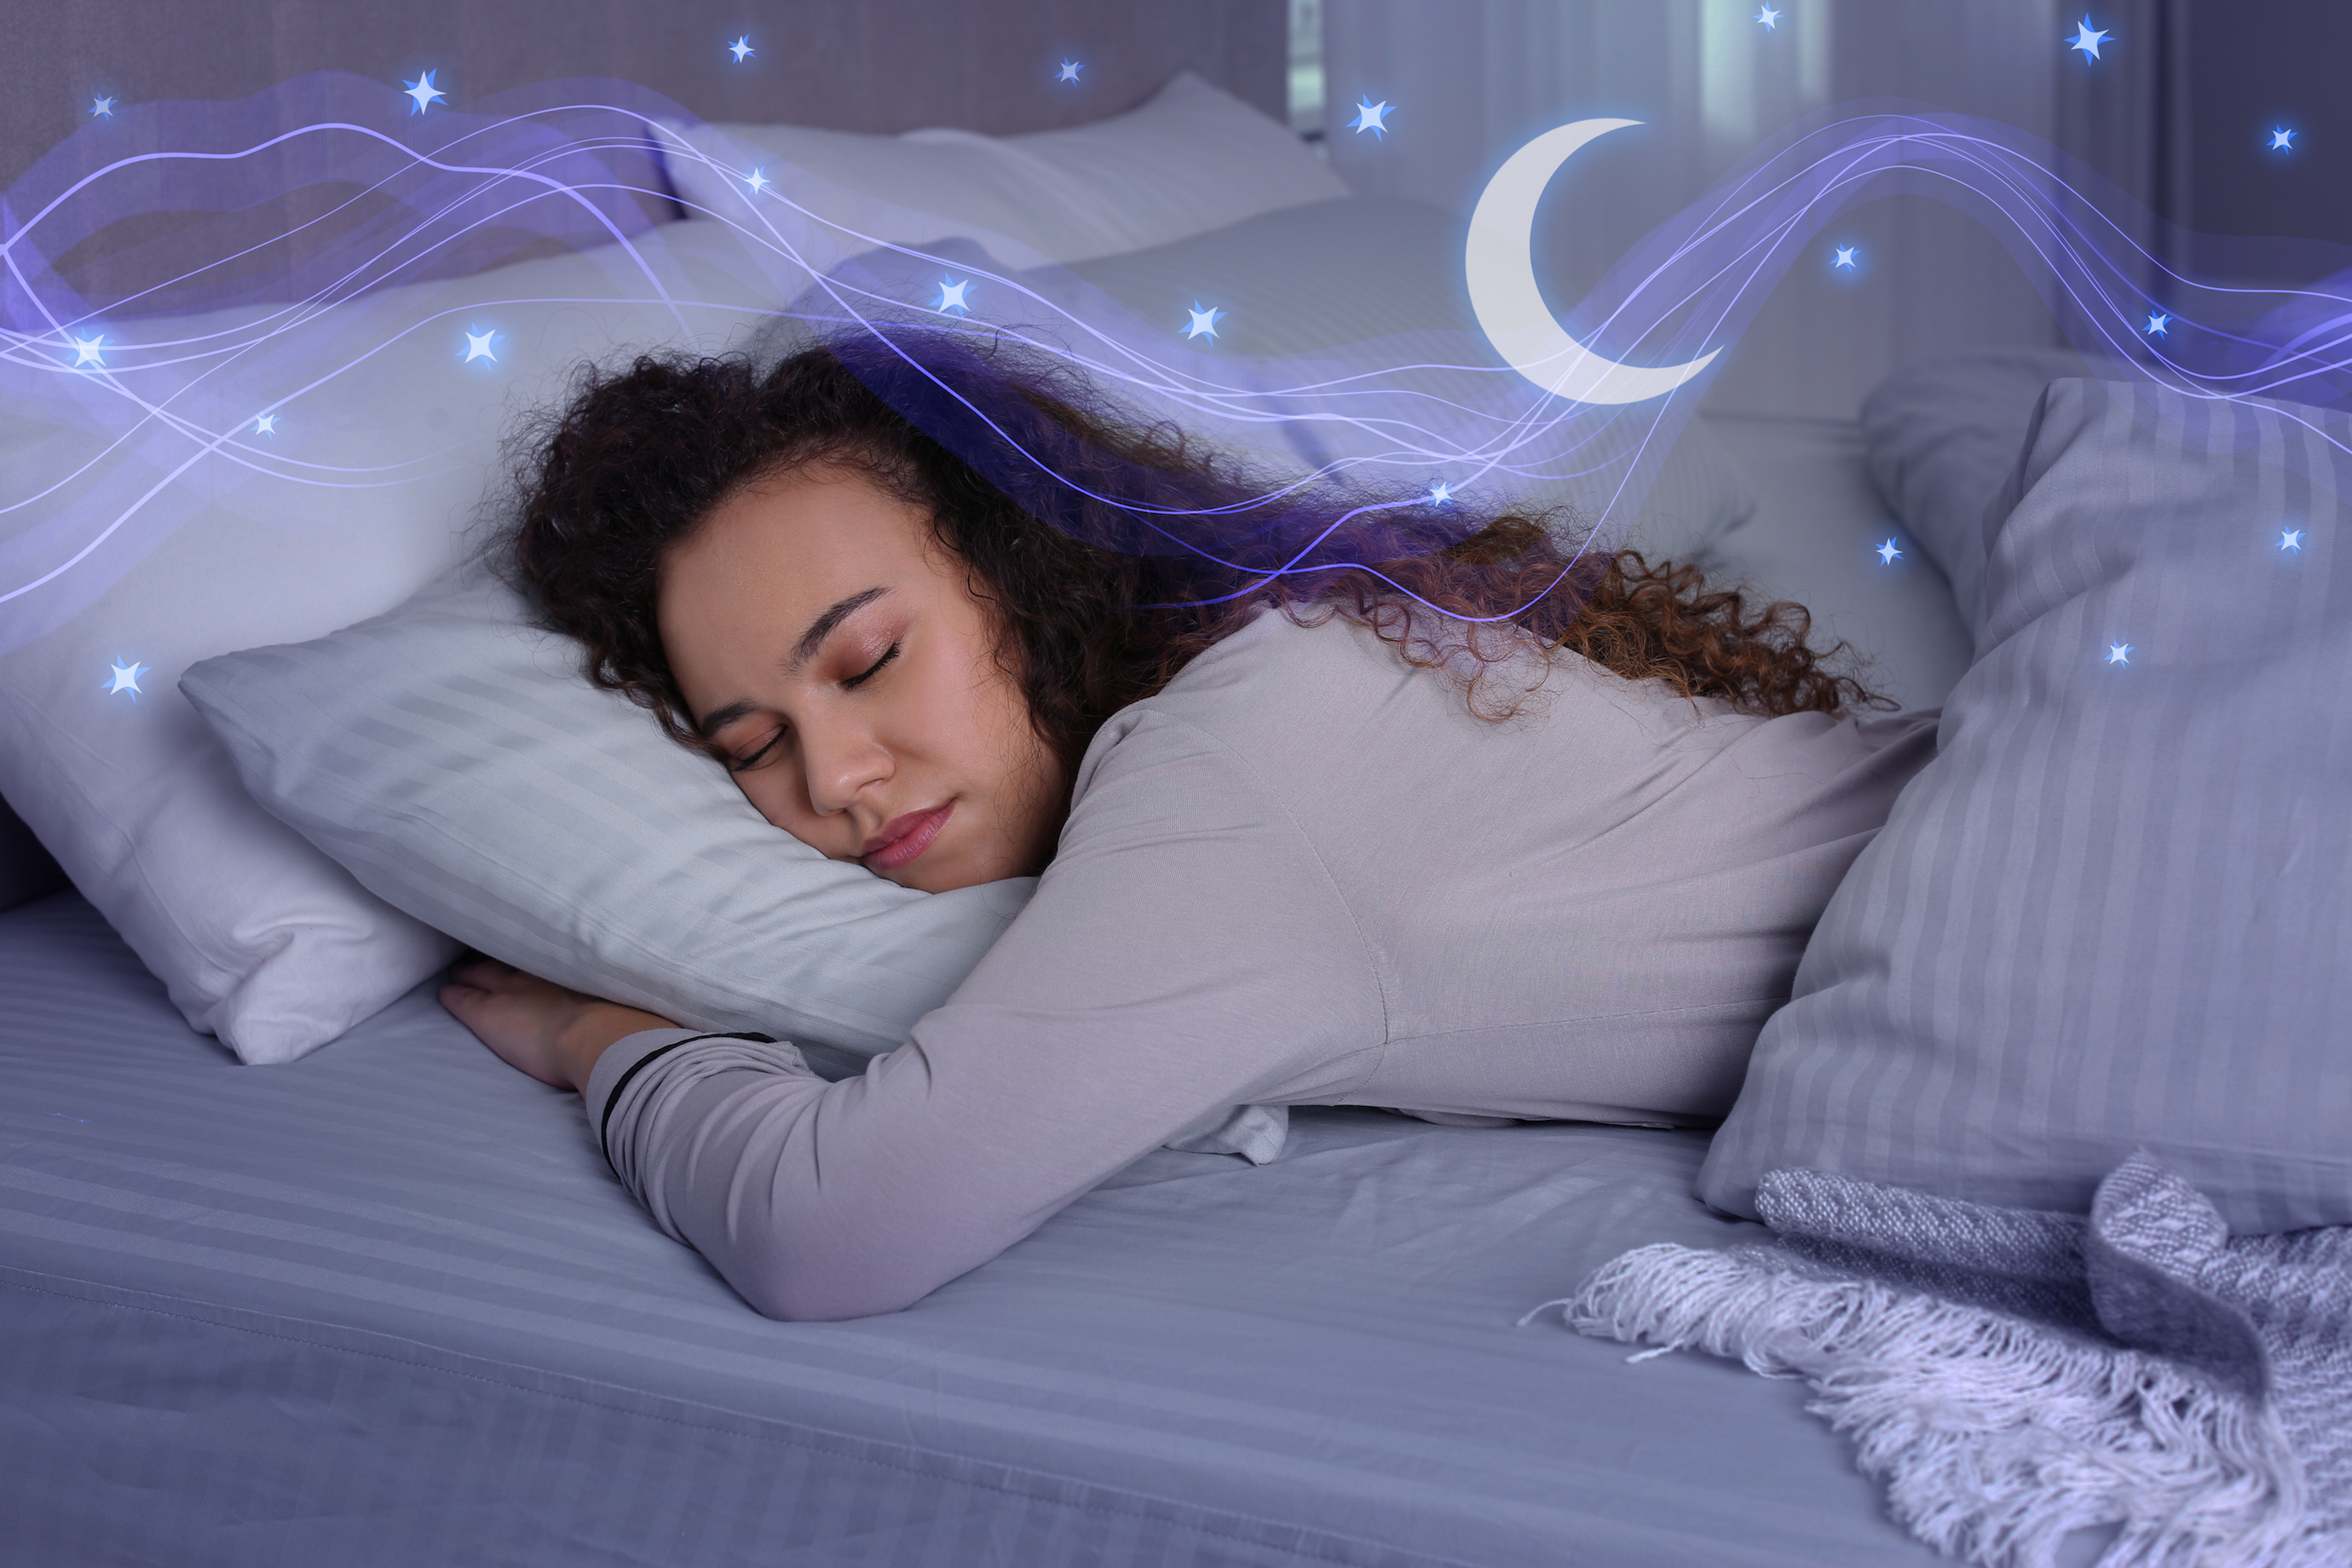 Le sommeil, le rythme circadien et la santé mentale sont intimement liés. © New Africa, Adobe Stock